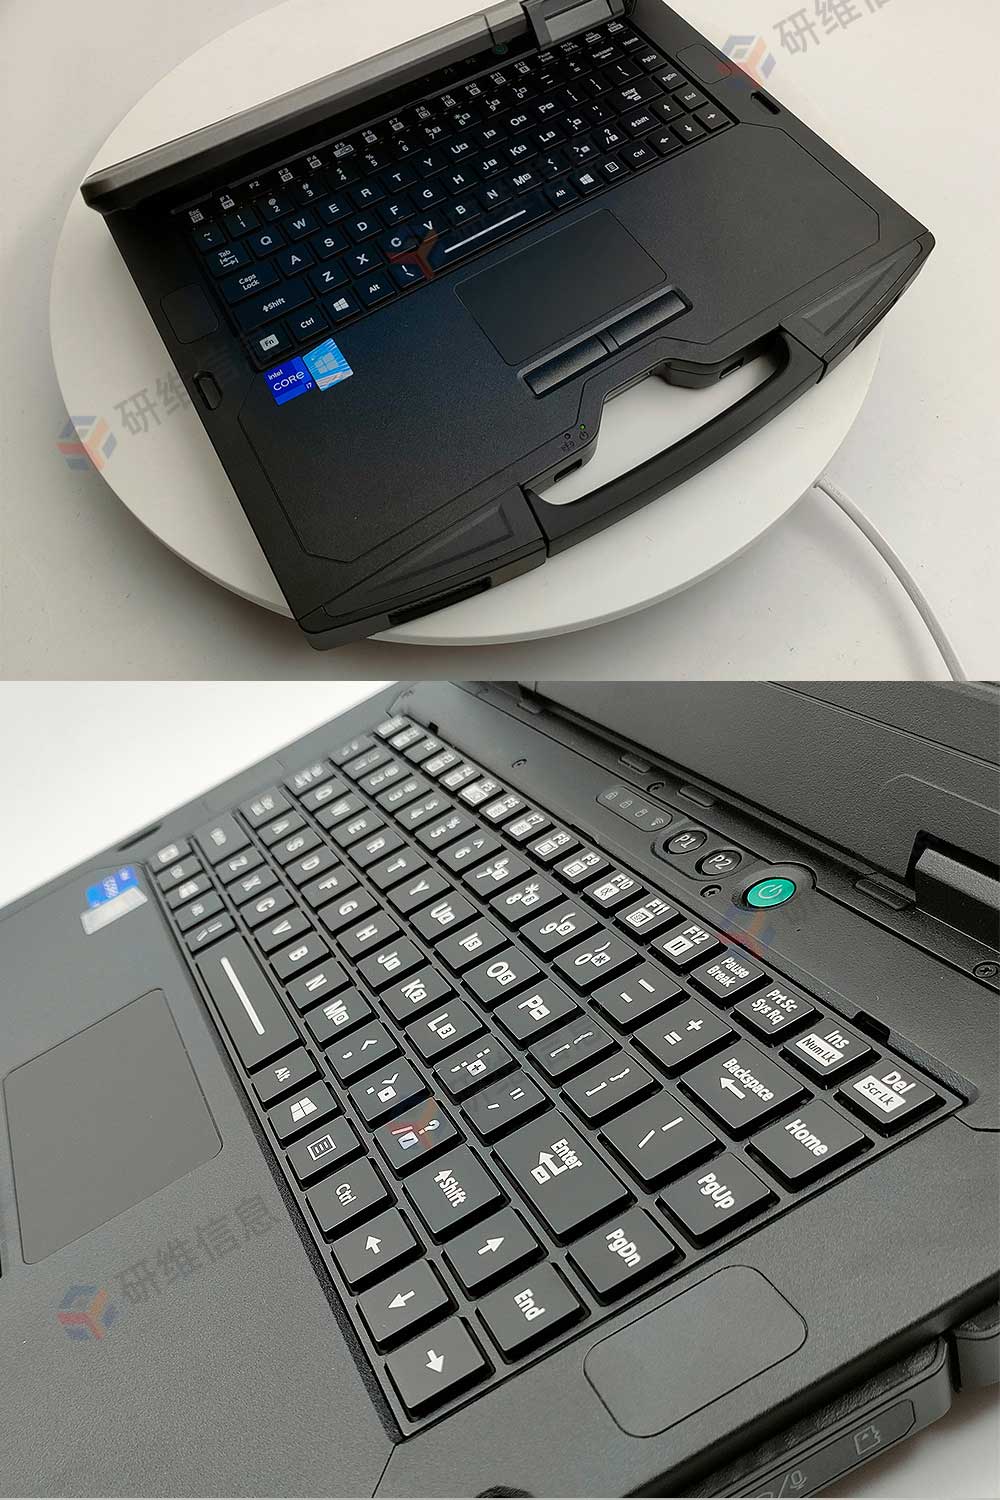 14寸加固笔记本|Windows10系统加固式笔记本电脑|国产笔记本电脑|三防笔记本电脑E475